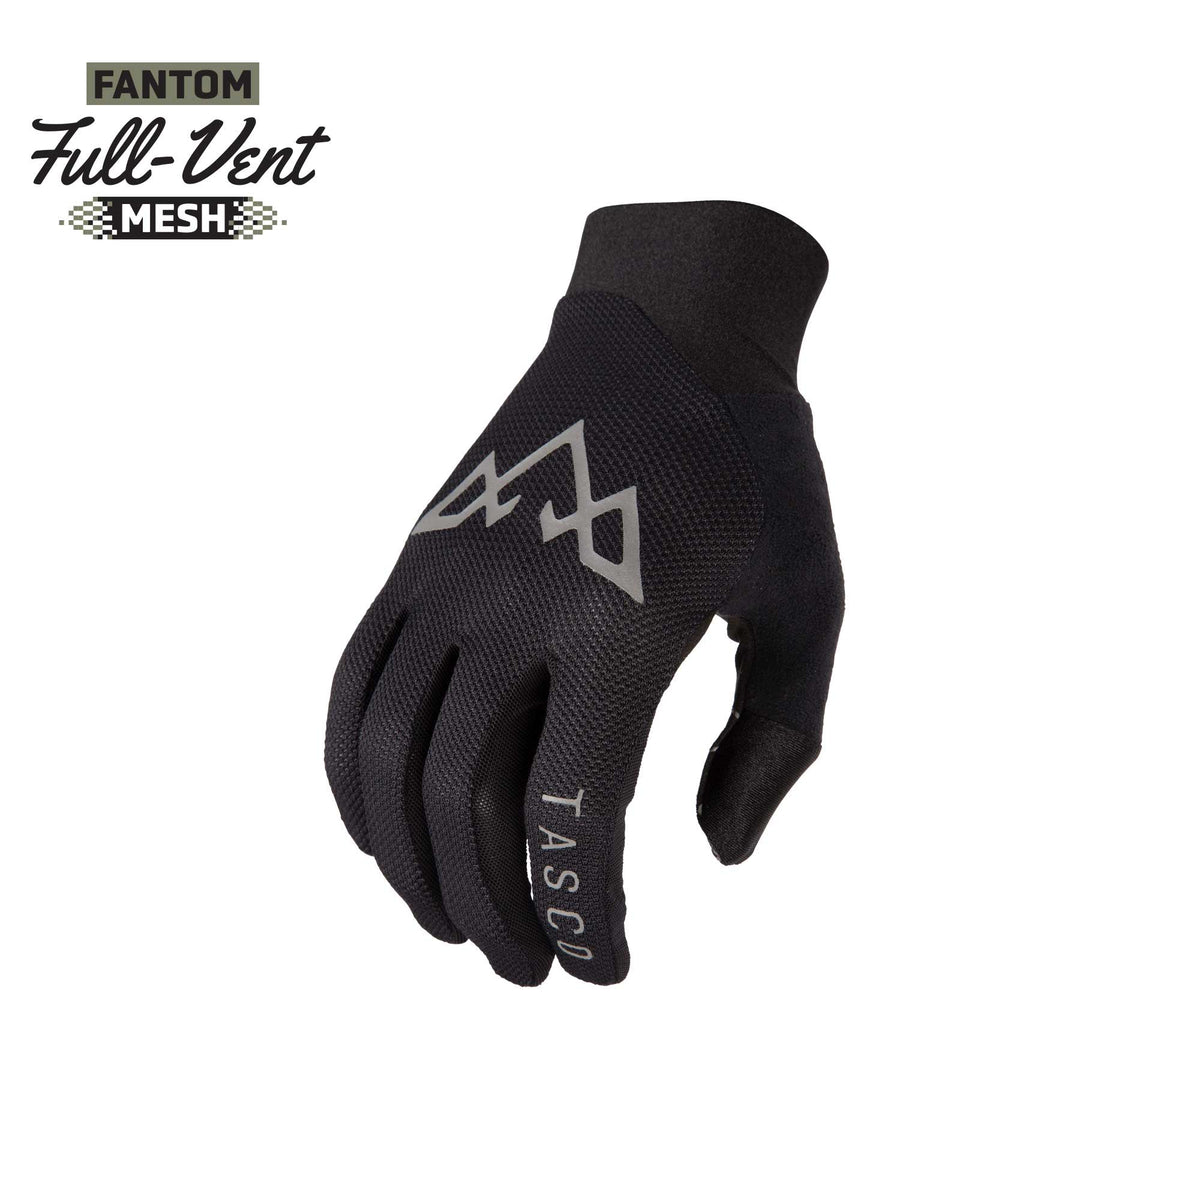 Fantom Ultralite Gloves - Black